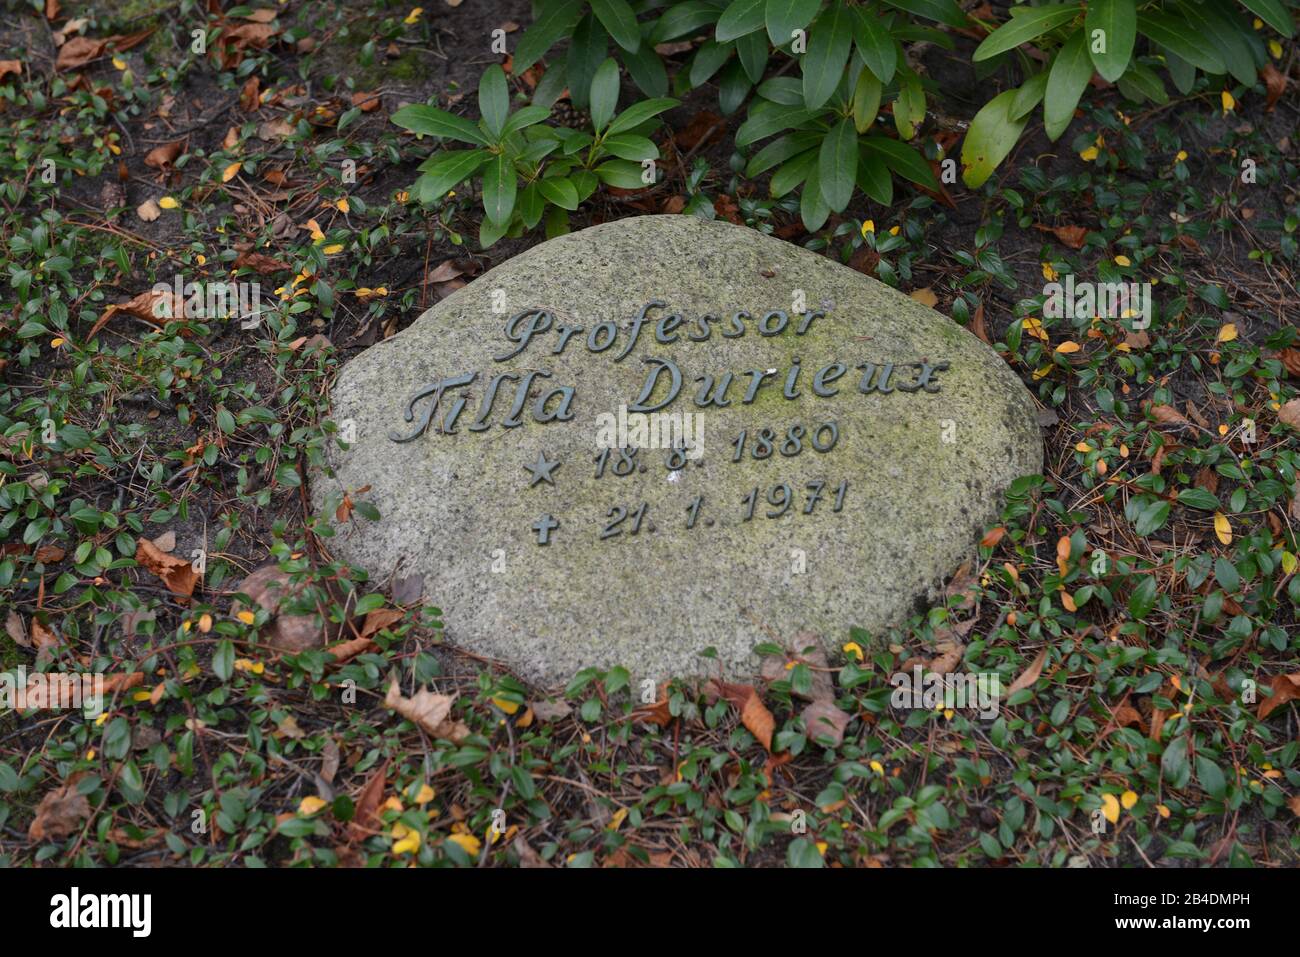 Grab, Tilla Durieux, Waldfriedhof, Heerstrasse, Charlottenburg di Berlino, Deutschland Foto Stock